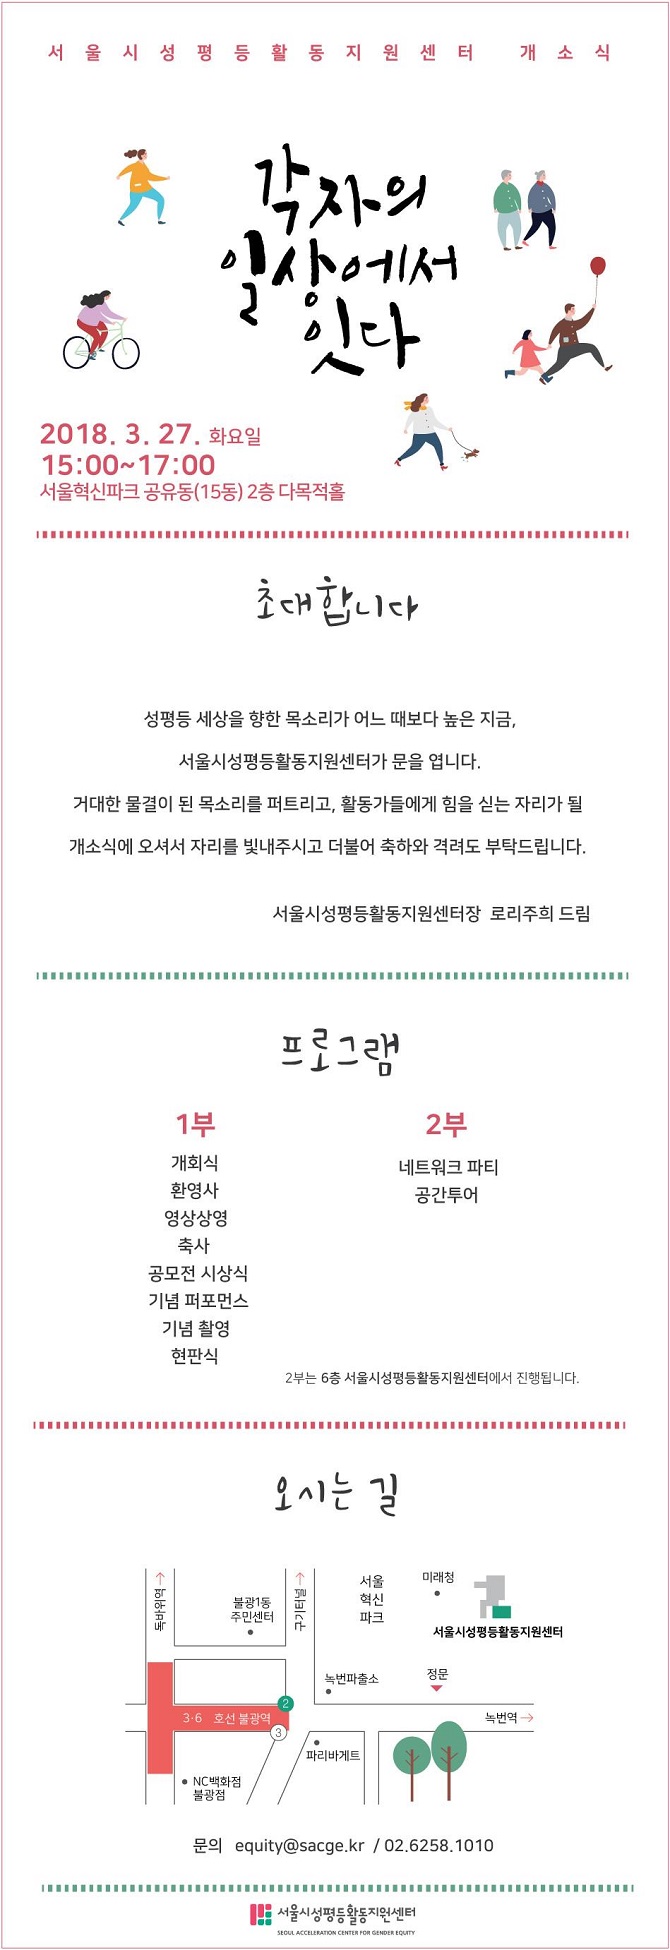 [서울시성평등활동지원센터] 개소식 초대 및 안내